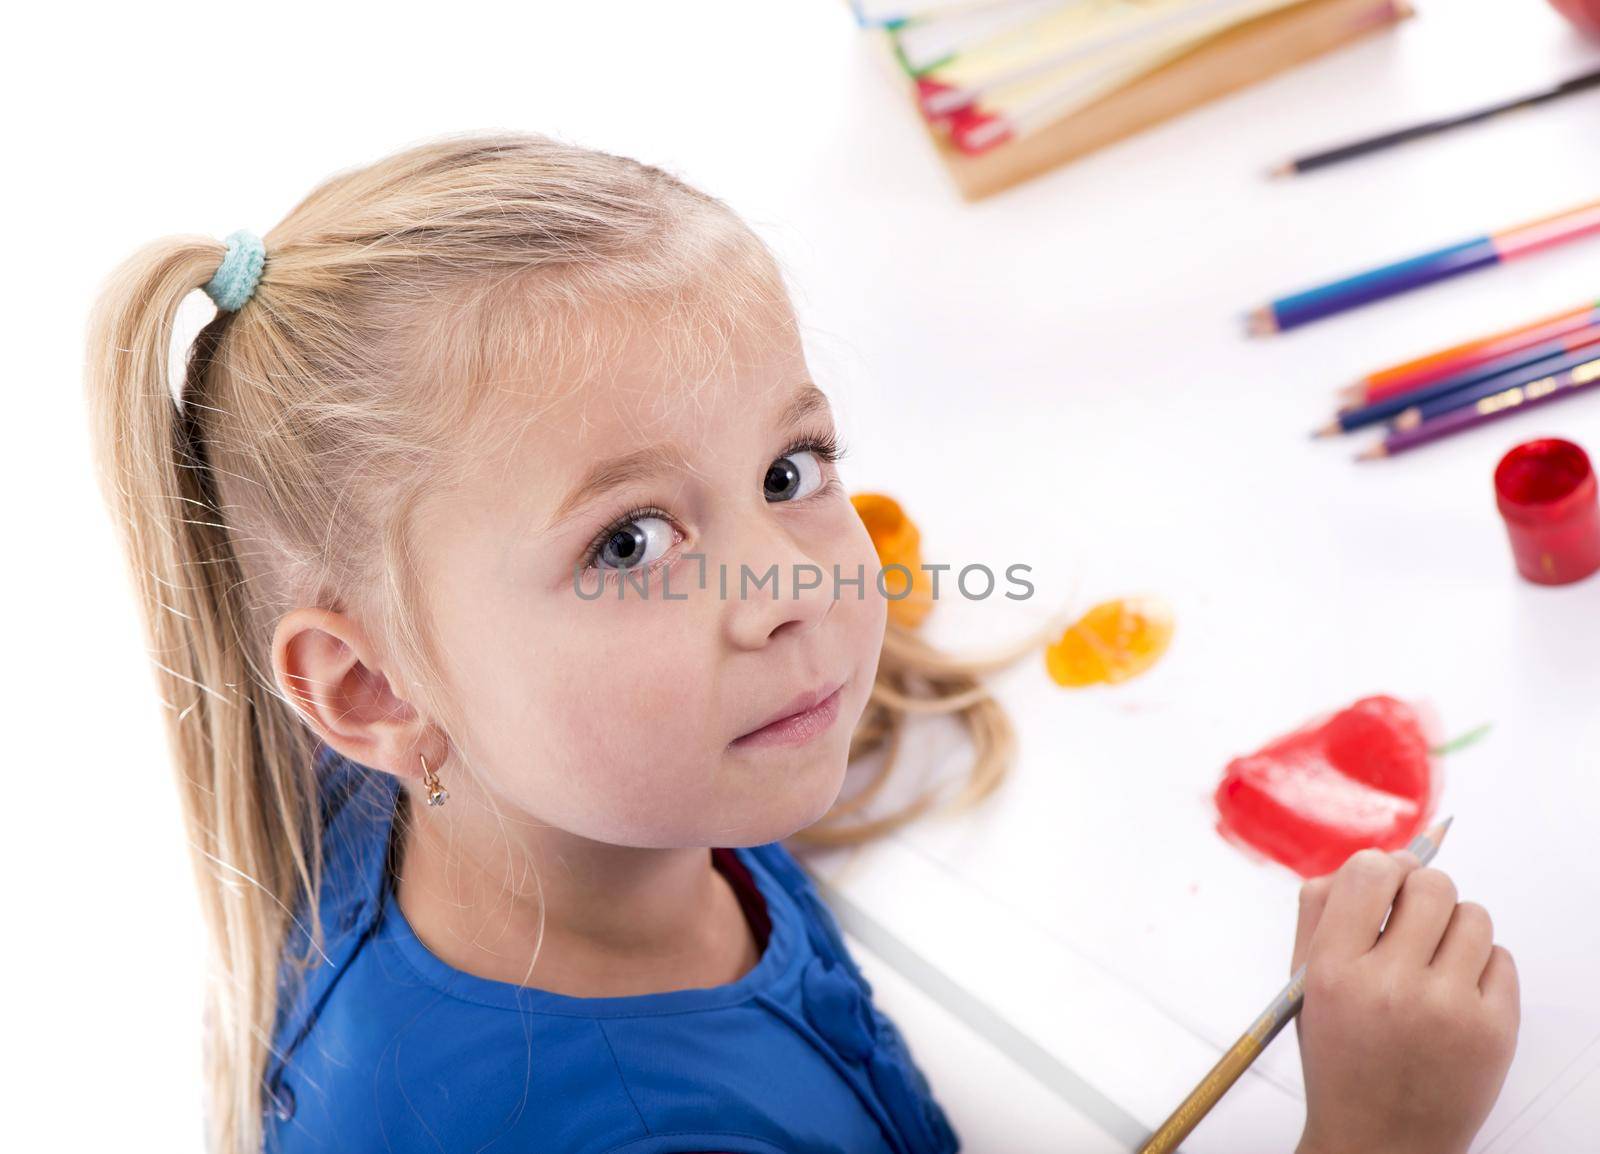 Children's hobbies, creativity, a little girl in a blue dress draws paints by aprilphoto